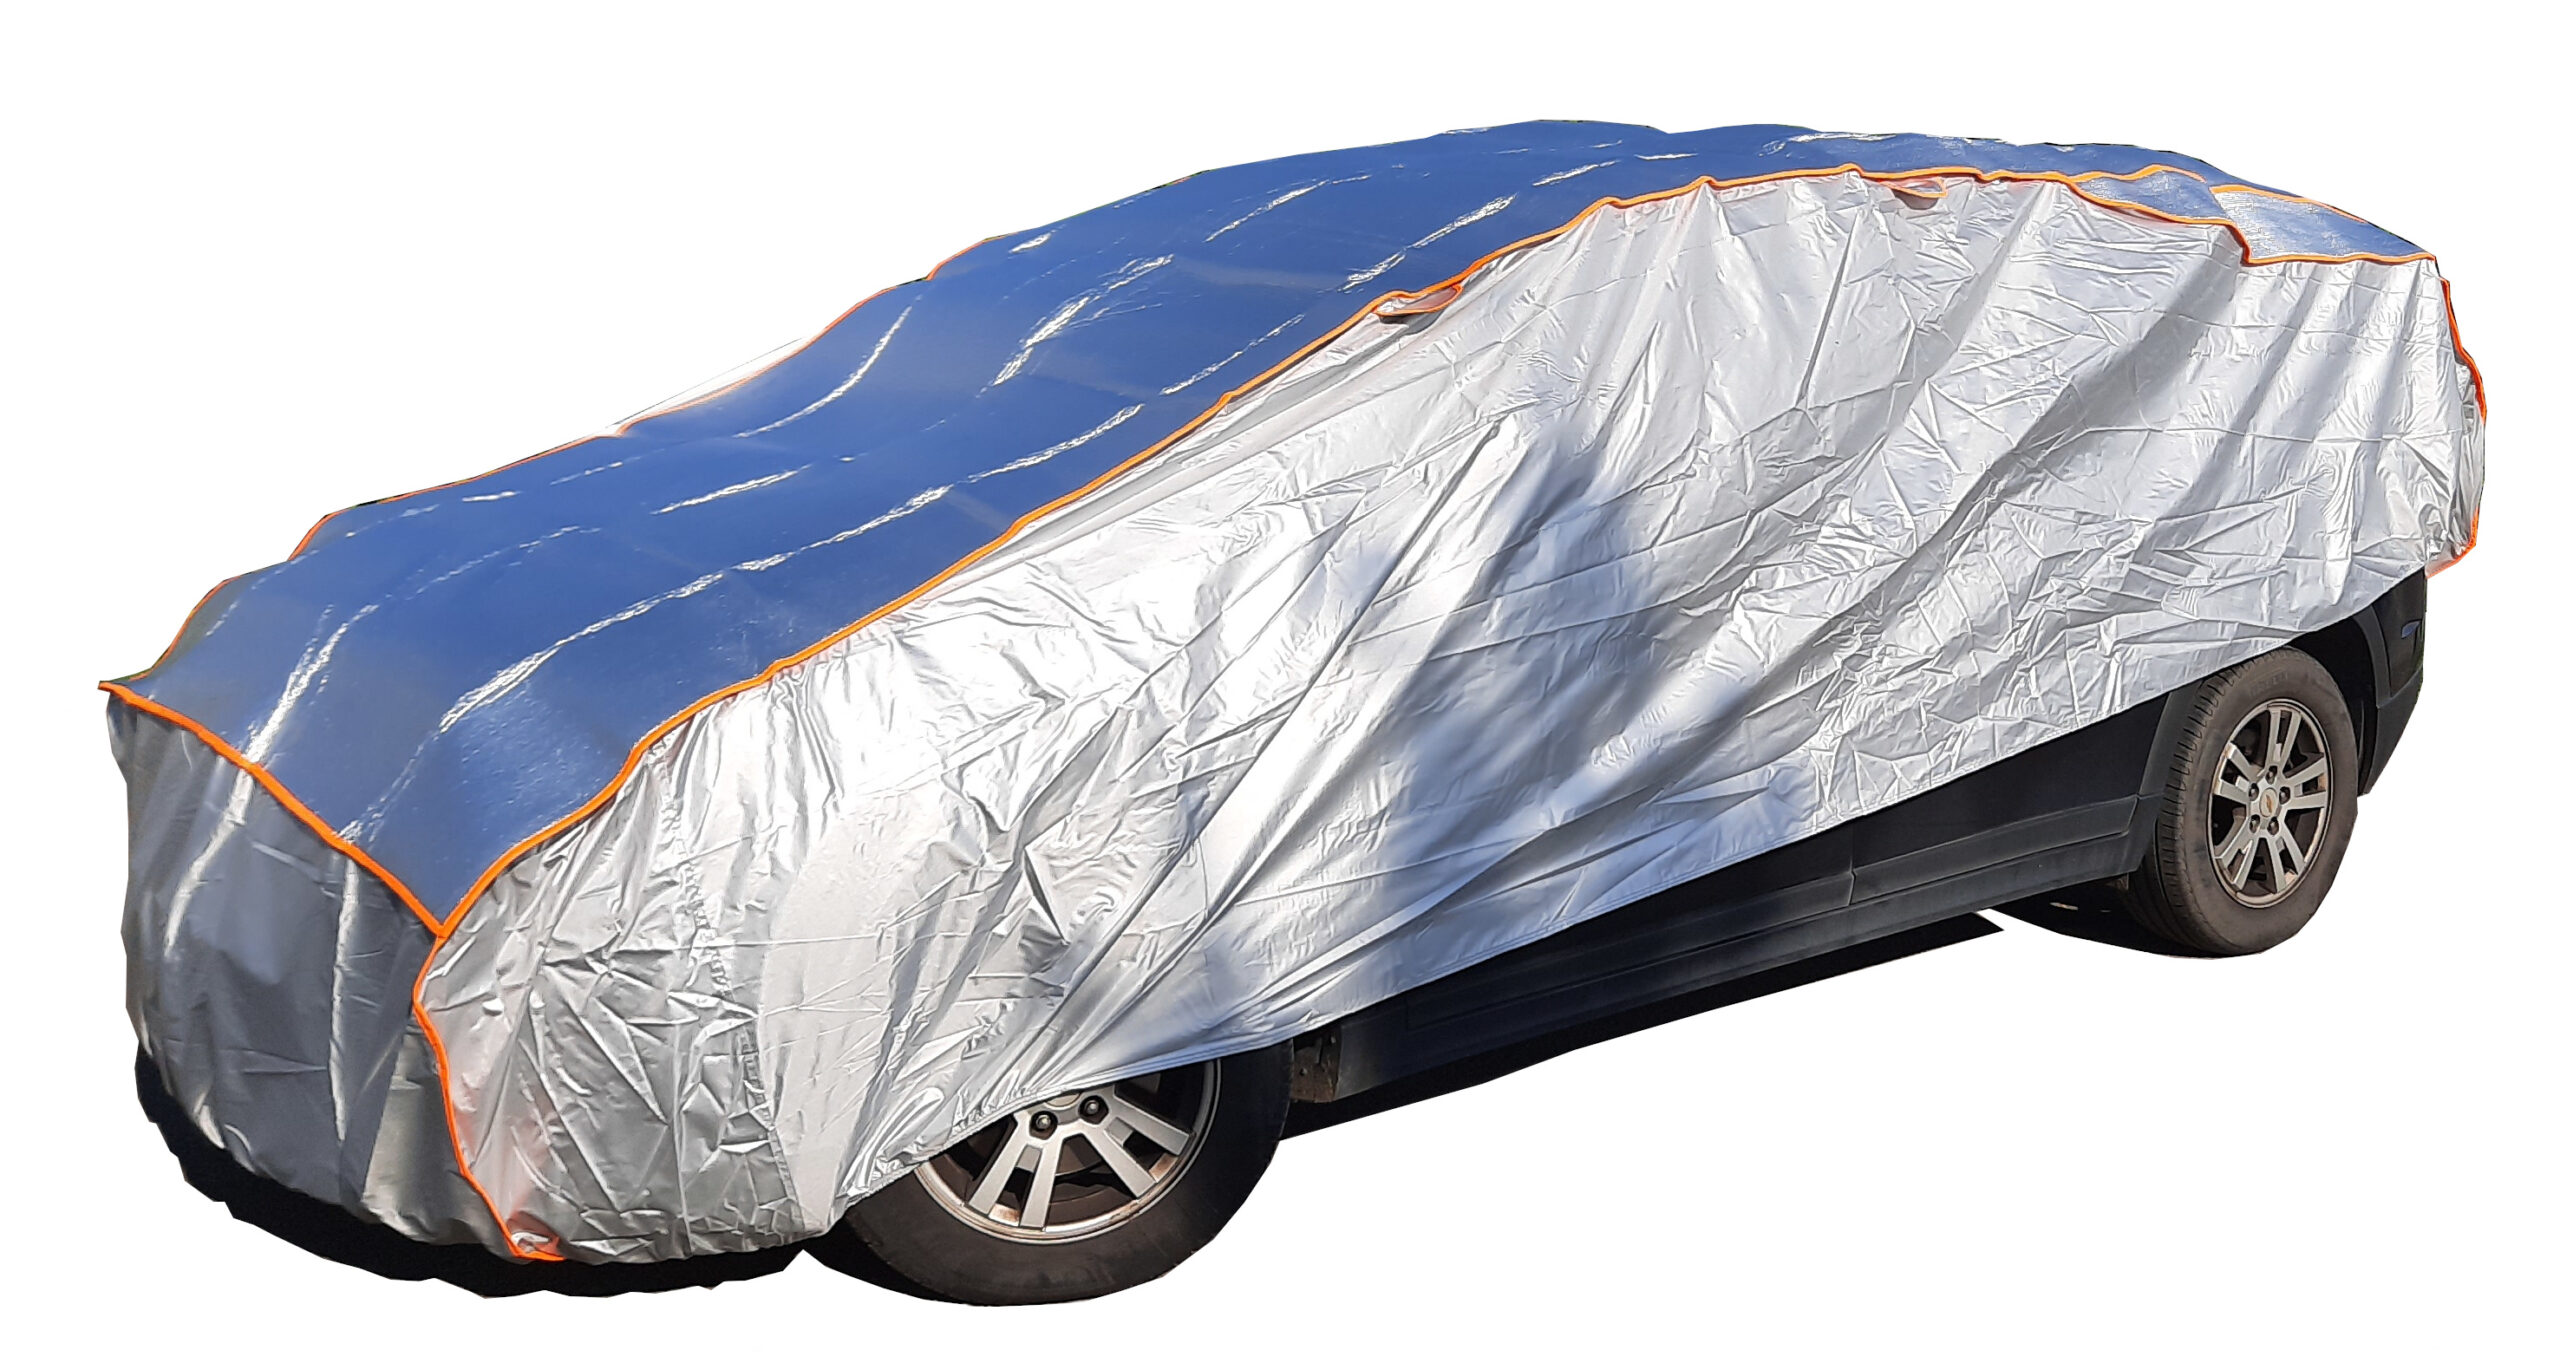 Bâche de protection anti-grêle housse couverture voiture M kombi